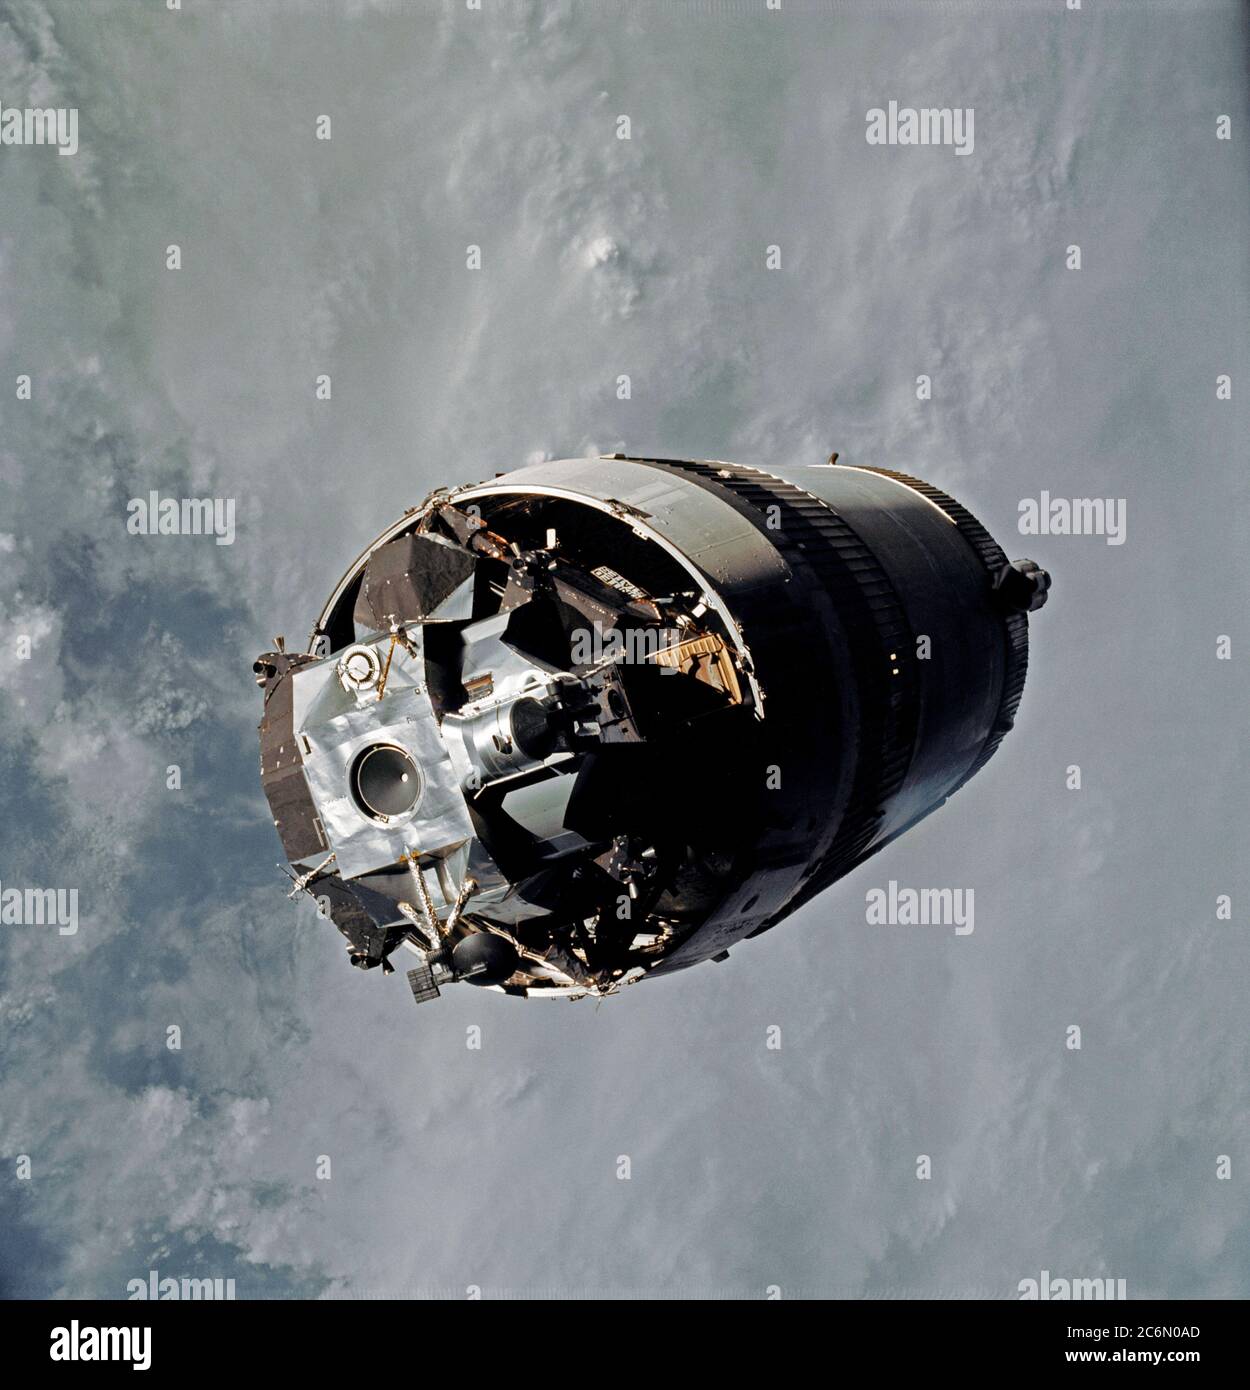 Il modulo lunare (LM) Spider, ancora attaccata per il Saturn V terzo (S-IVB) stadio, è fotografato dal comando e moduli di servizio (CSM) Decorazione caramelle il primo giorno dell'Apollo 9 missione Foto Stock